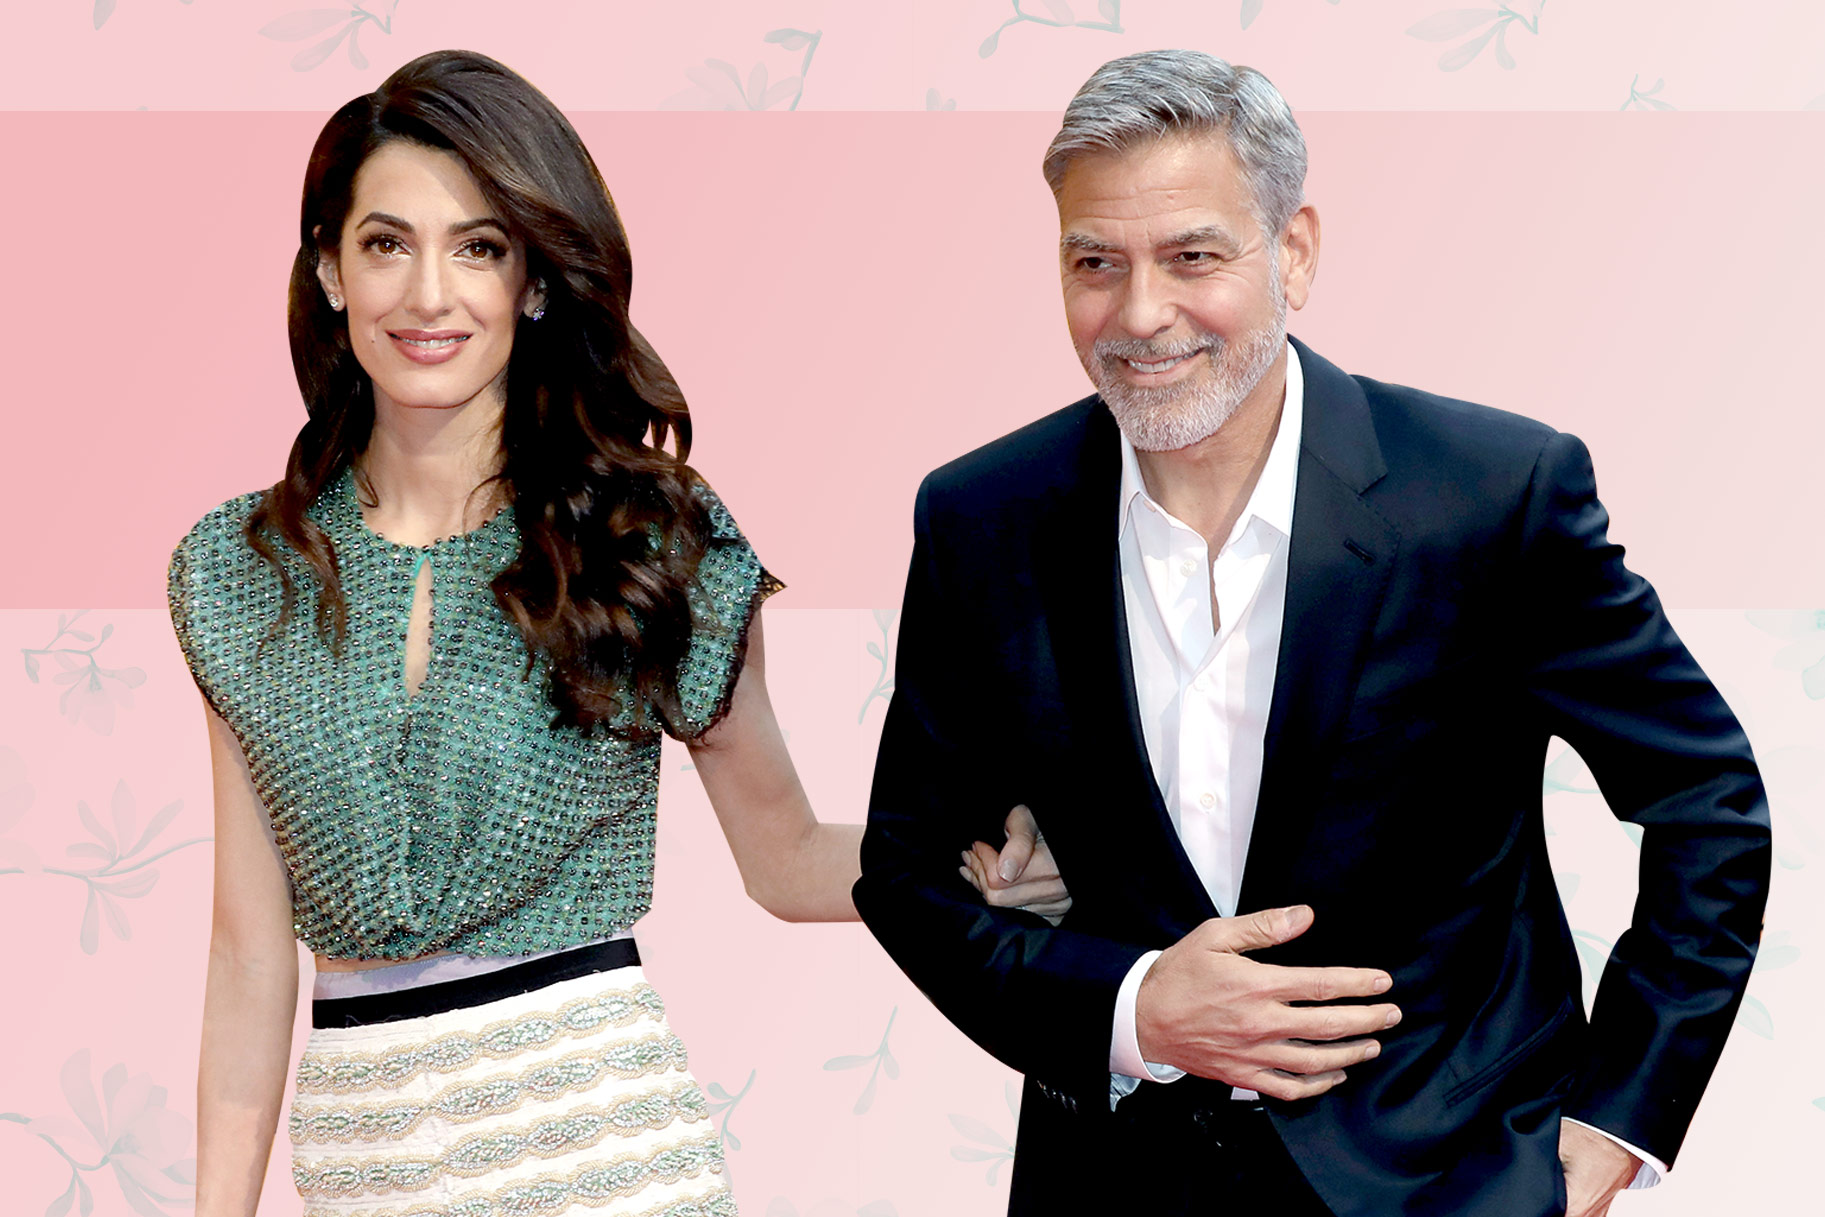 Джордж Клуни попросил журналистов перестать публиковать фото детей звёзд